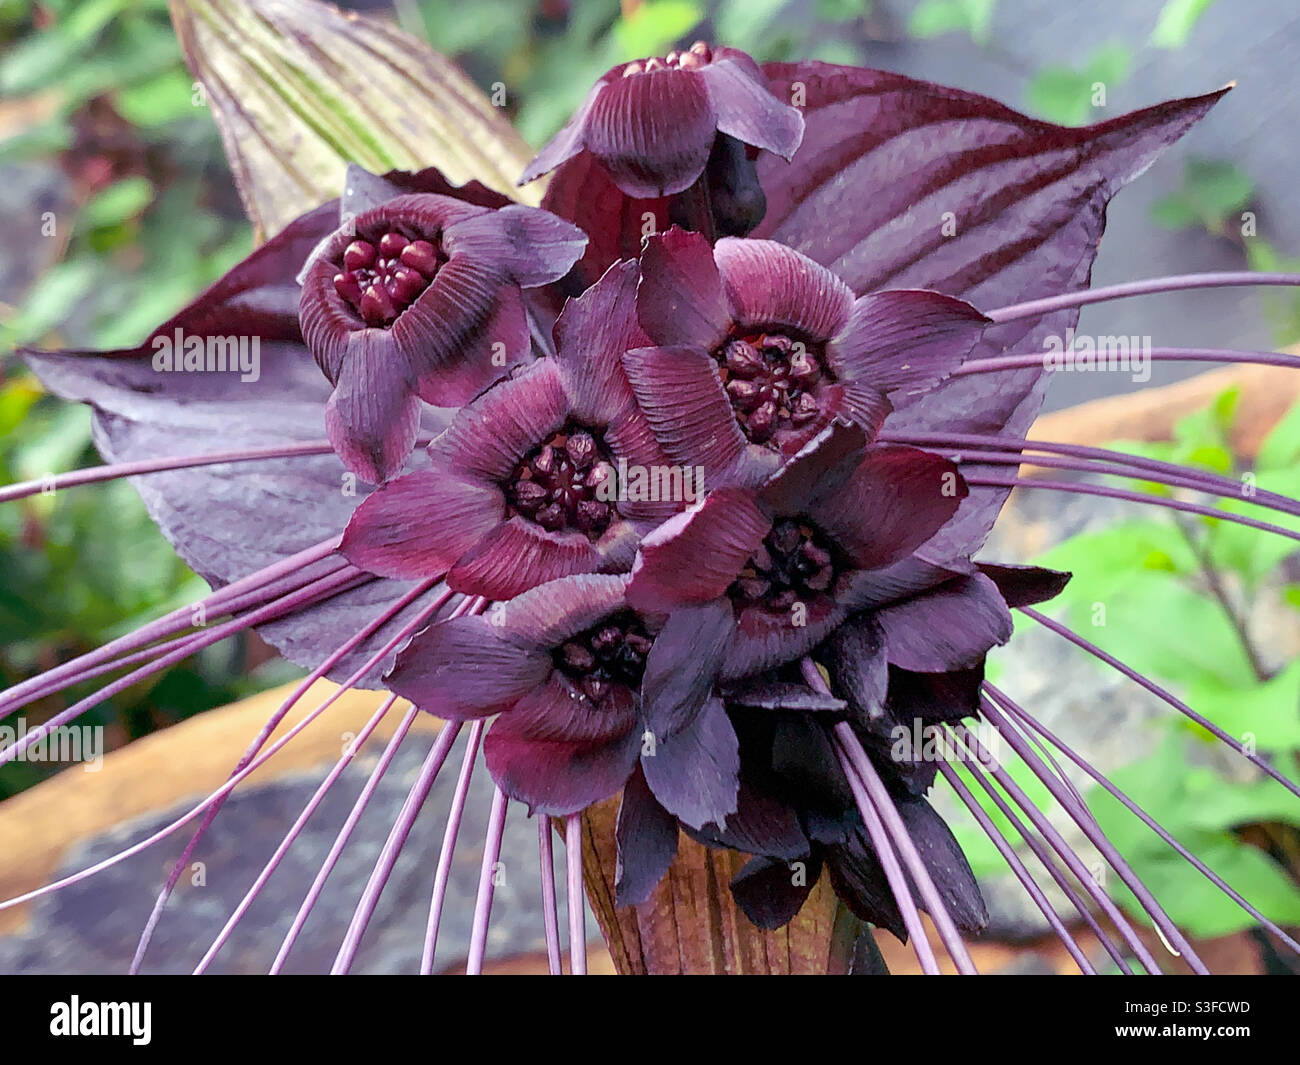 Una flor de murciélago negro o Tacca chantrieri en glorioso color púrpura  burgandy flor completa con sus muchas flores y susurros y brácteas detrás  Fotografía de stock - Alamy